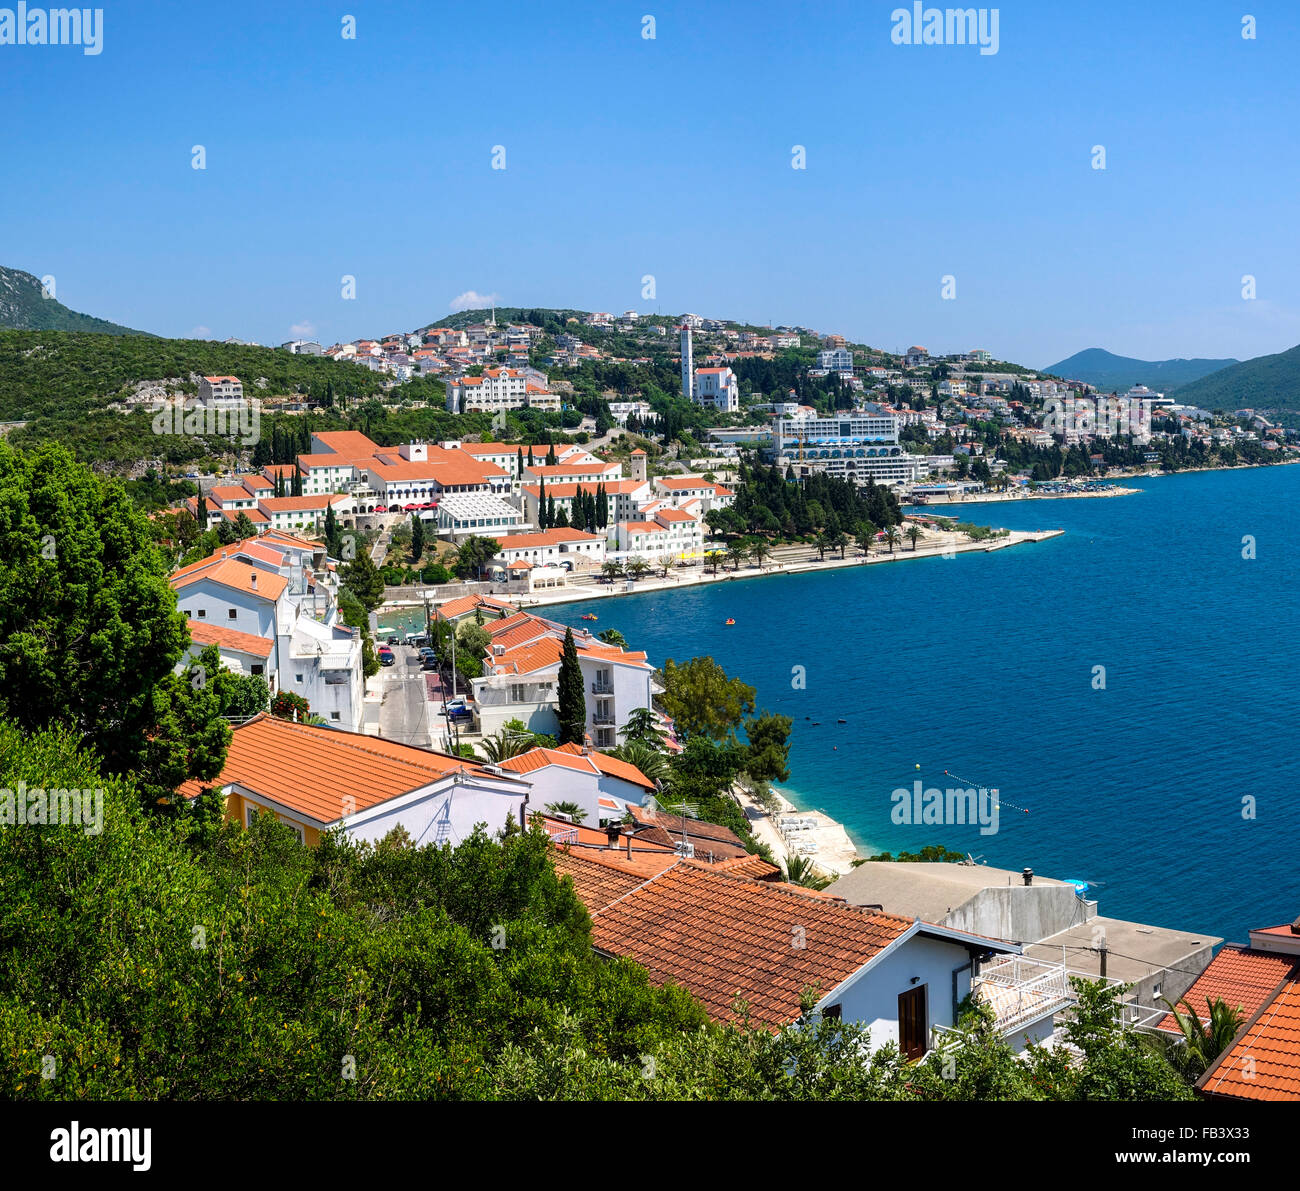 Badeort Neum, Bosnien-Herzegowina, der einzige Meer Zugang des Landes, Neum Stock Photo